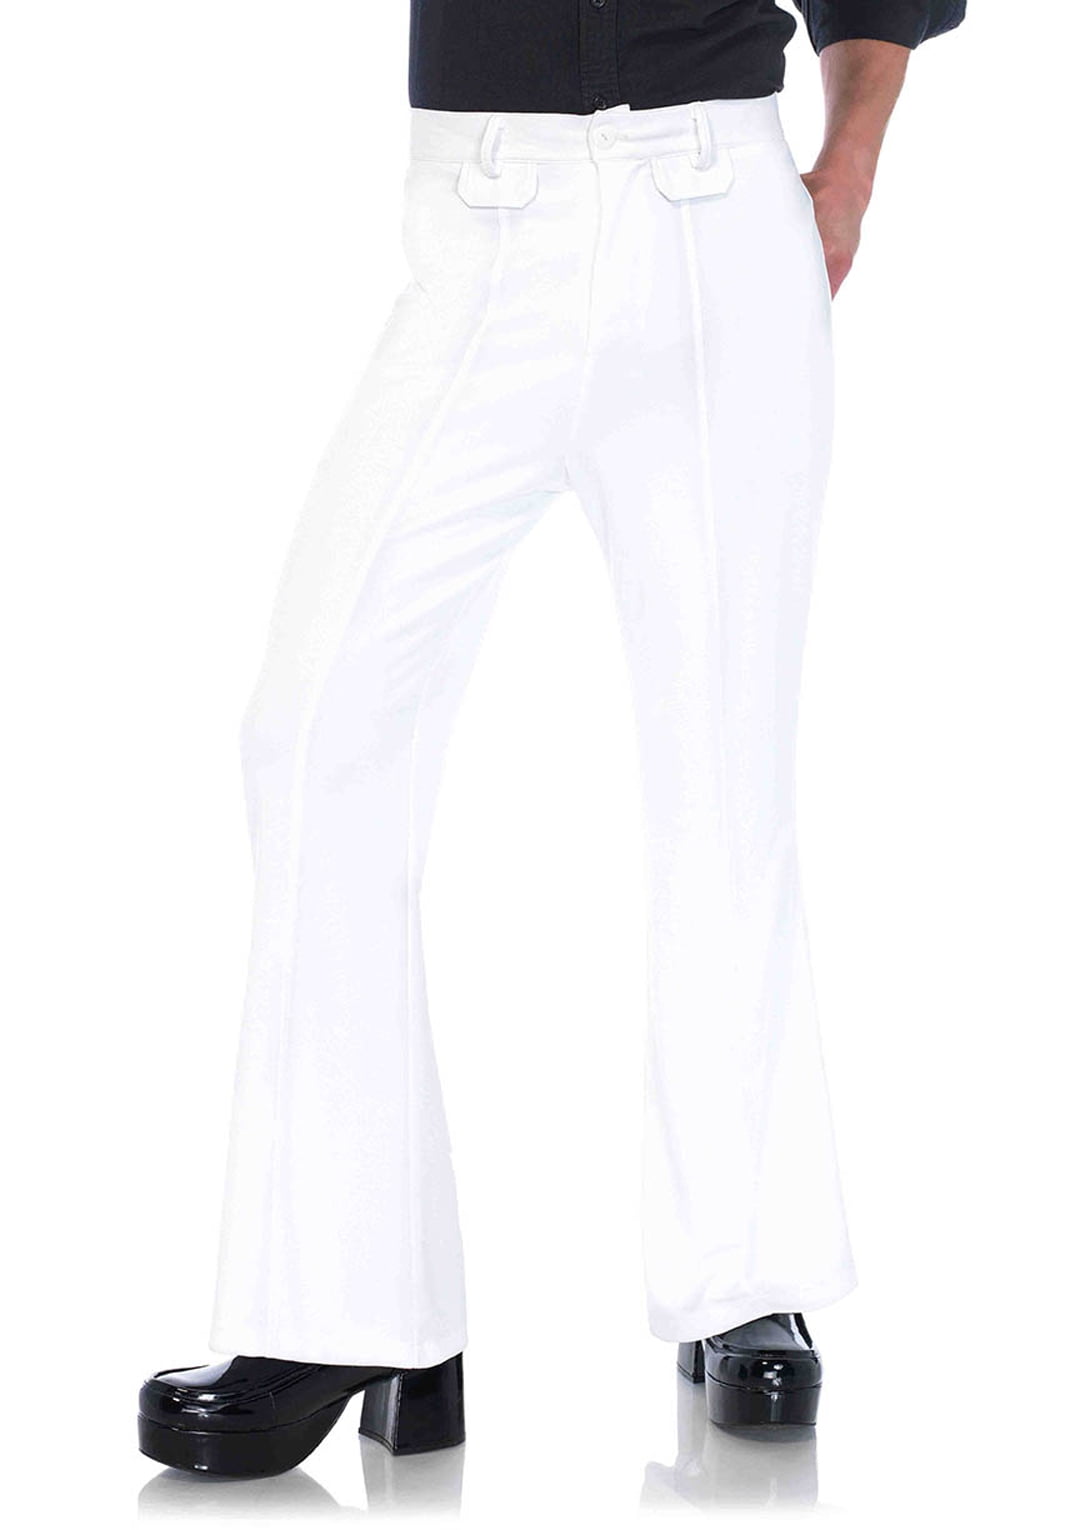 Bell Bottom Disco Pants - White